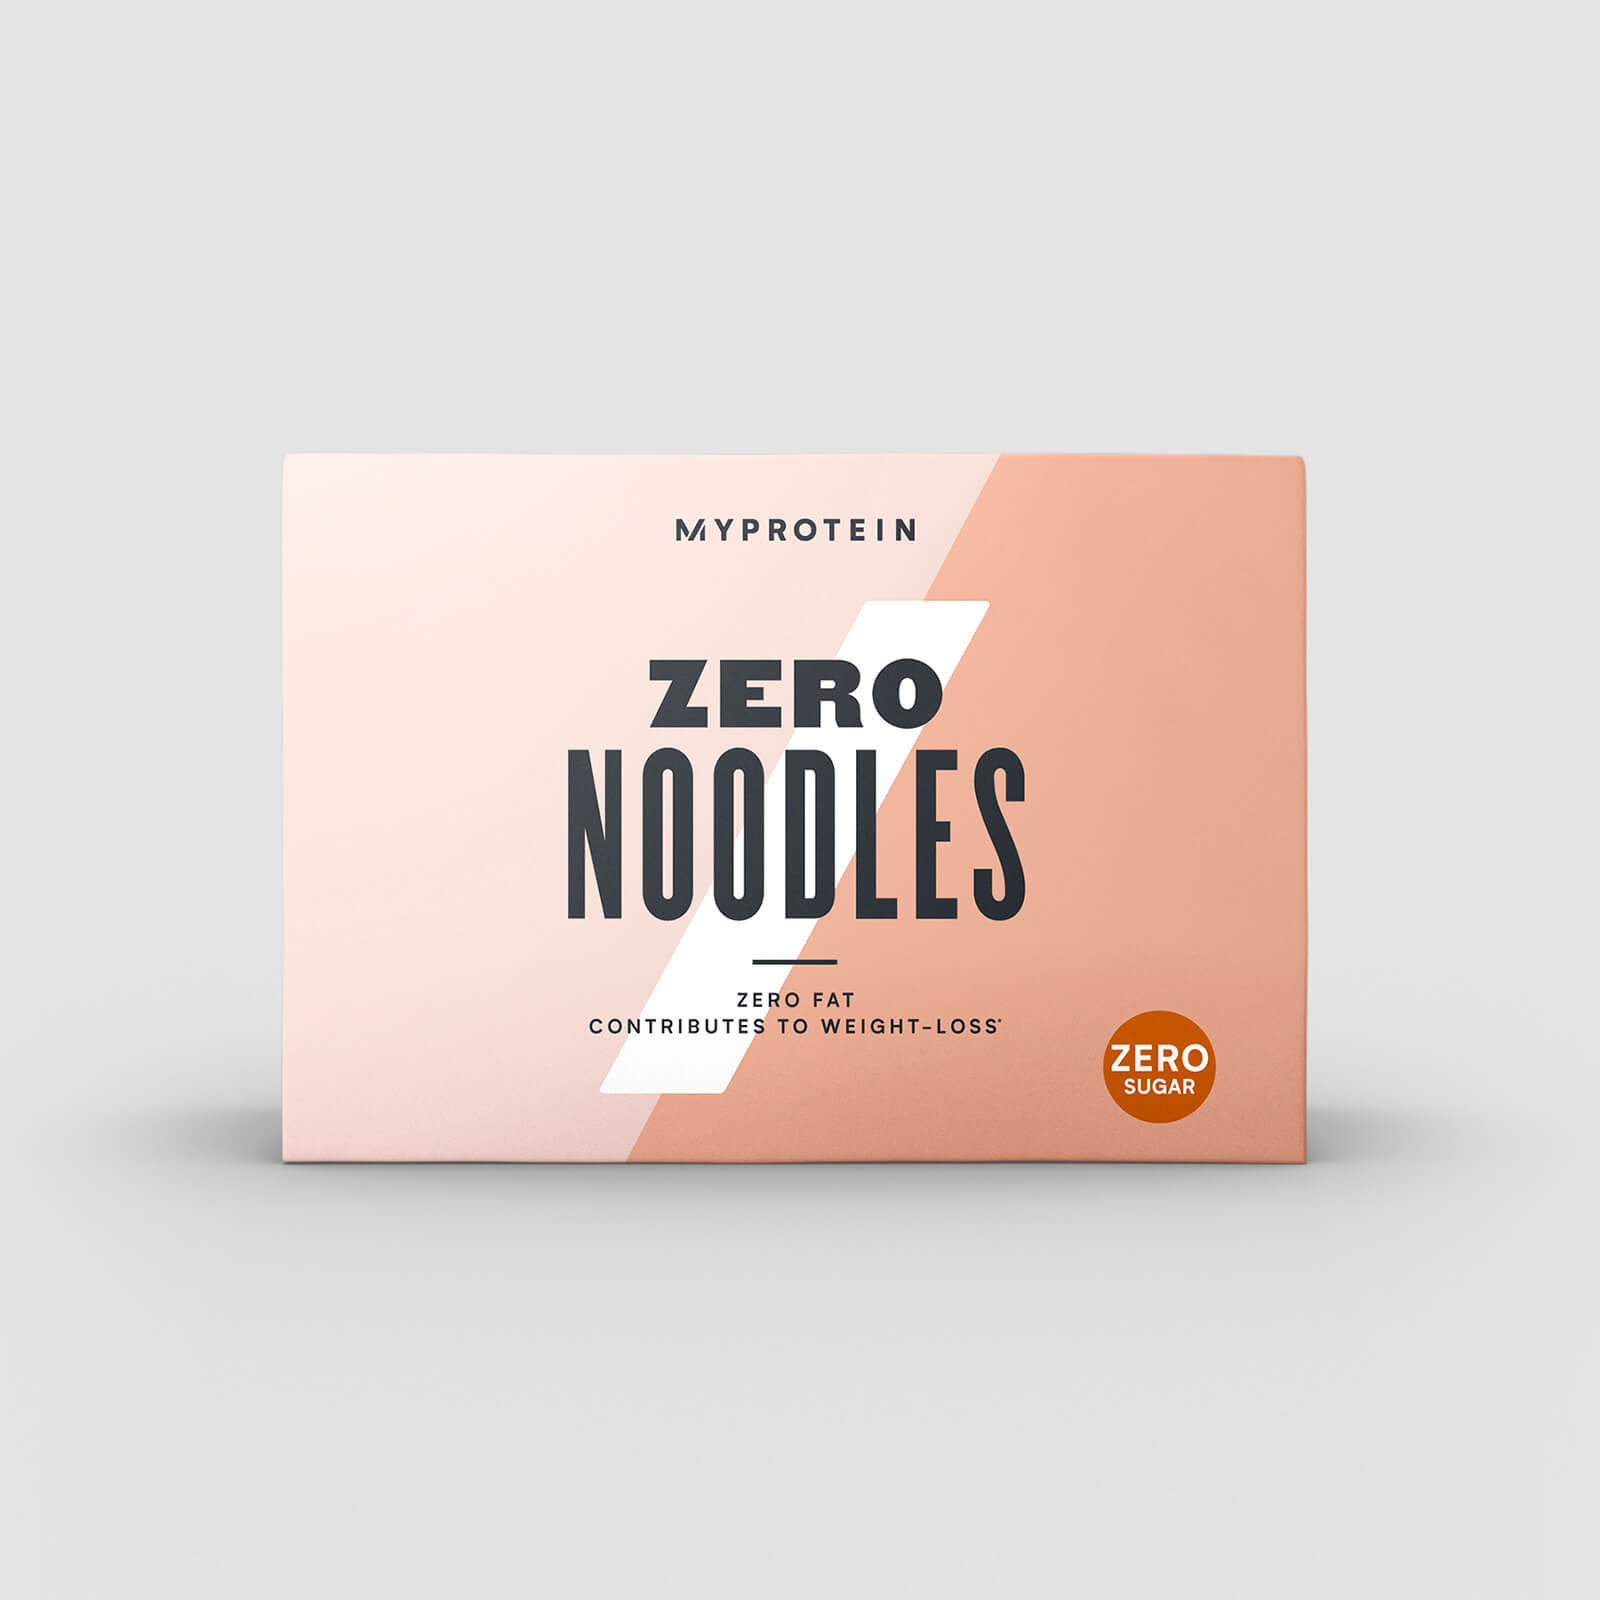 Noodles Zero